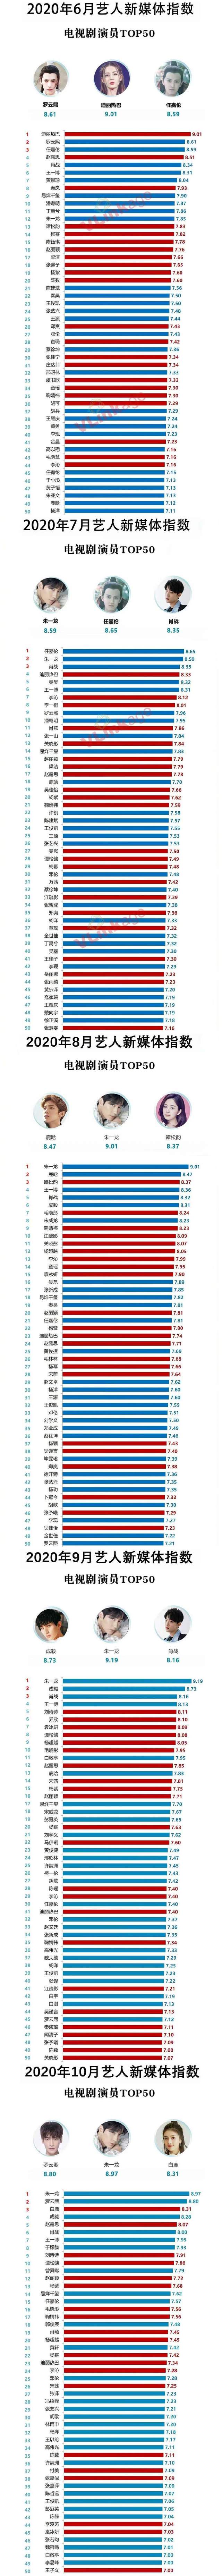 11月藝人新媒體指數：李易峰空降榜首，肖戰第三，唐嫣第四-圖6